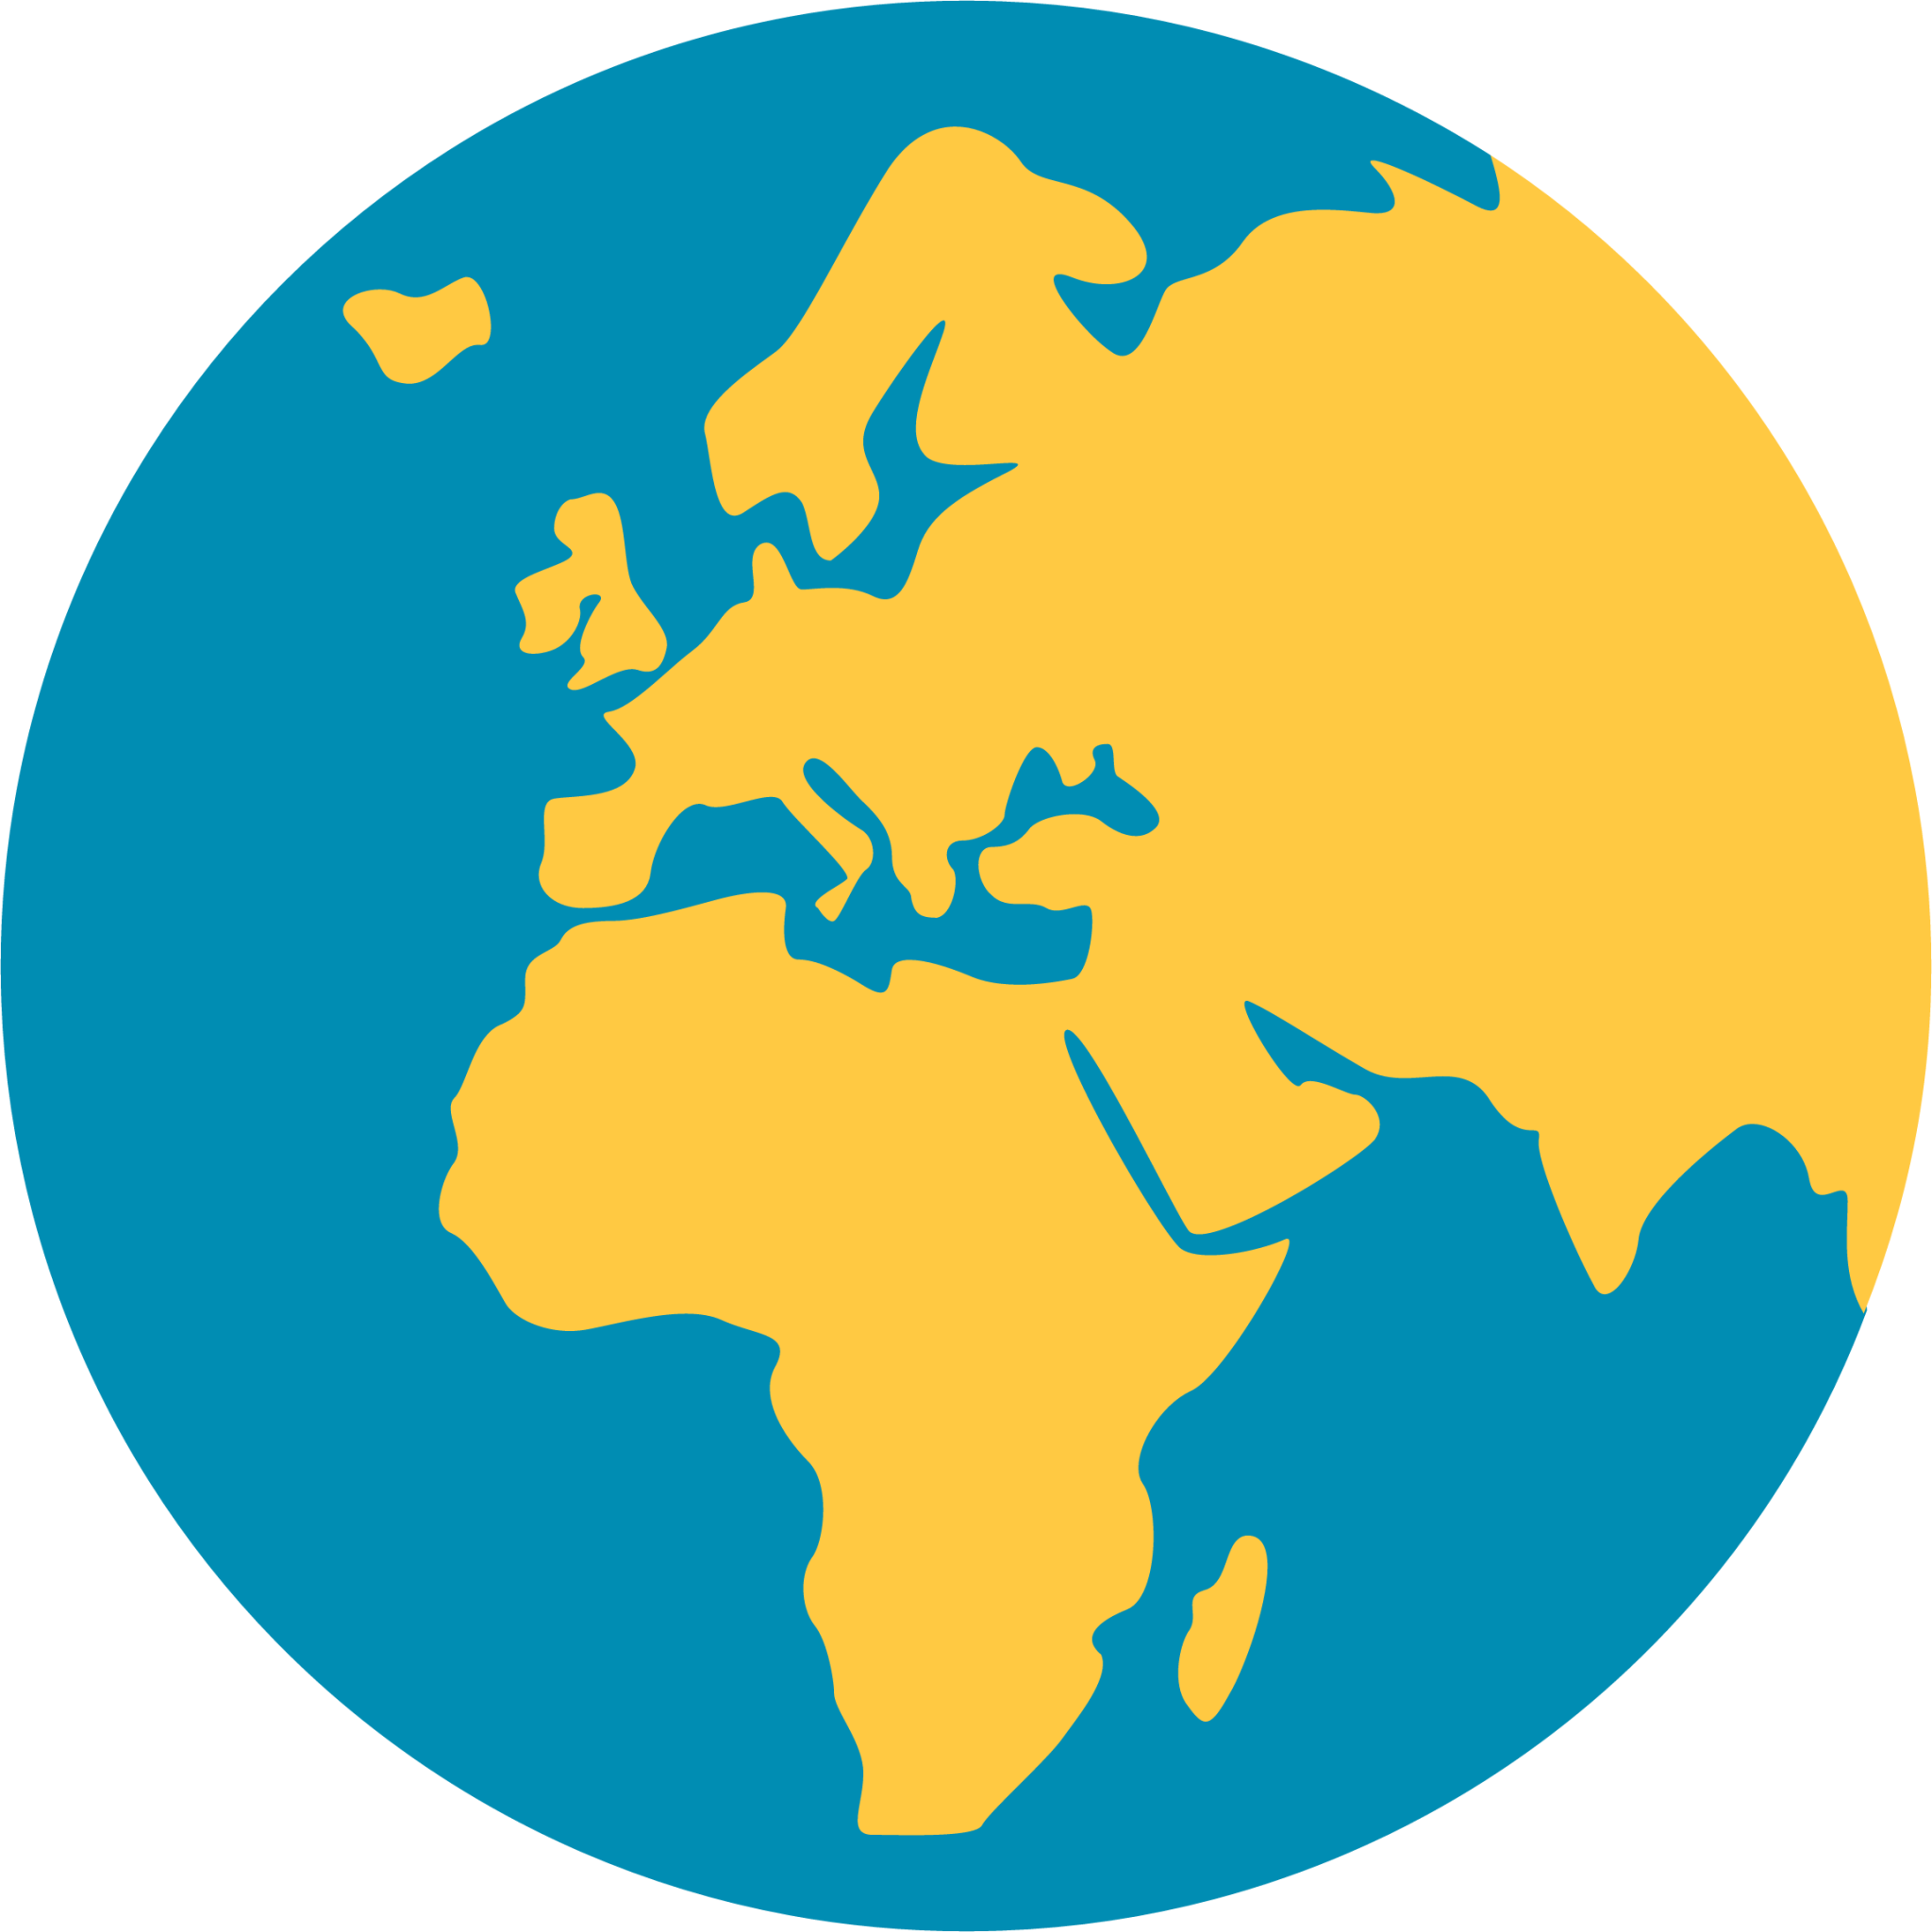 earth globe europe-africa emoji